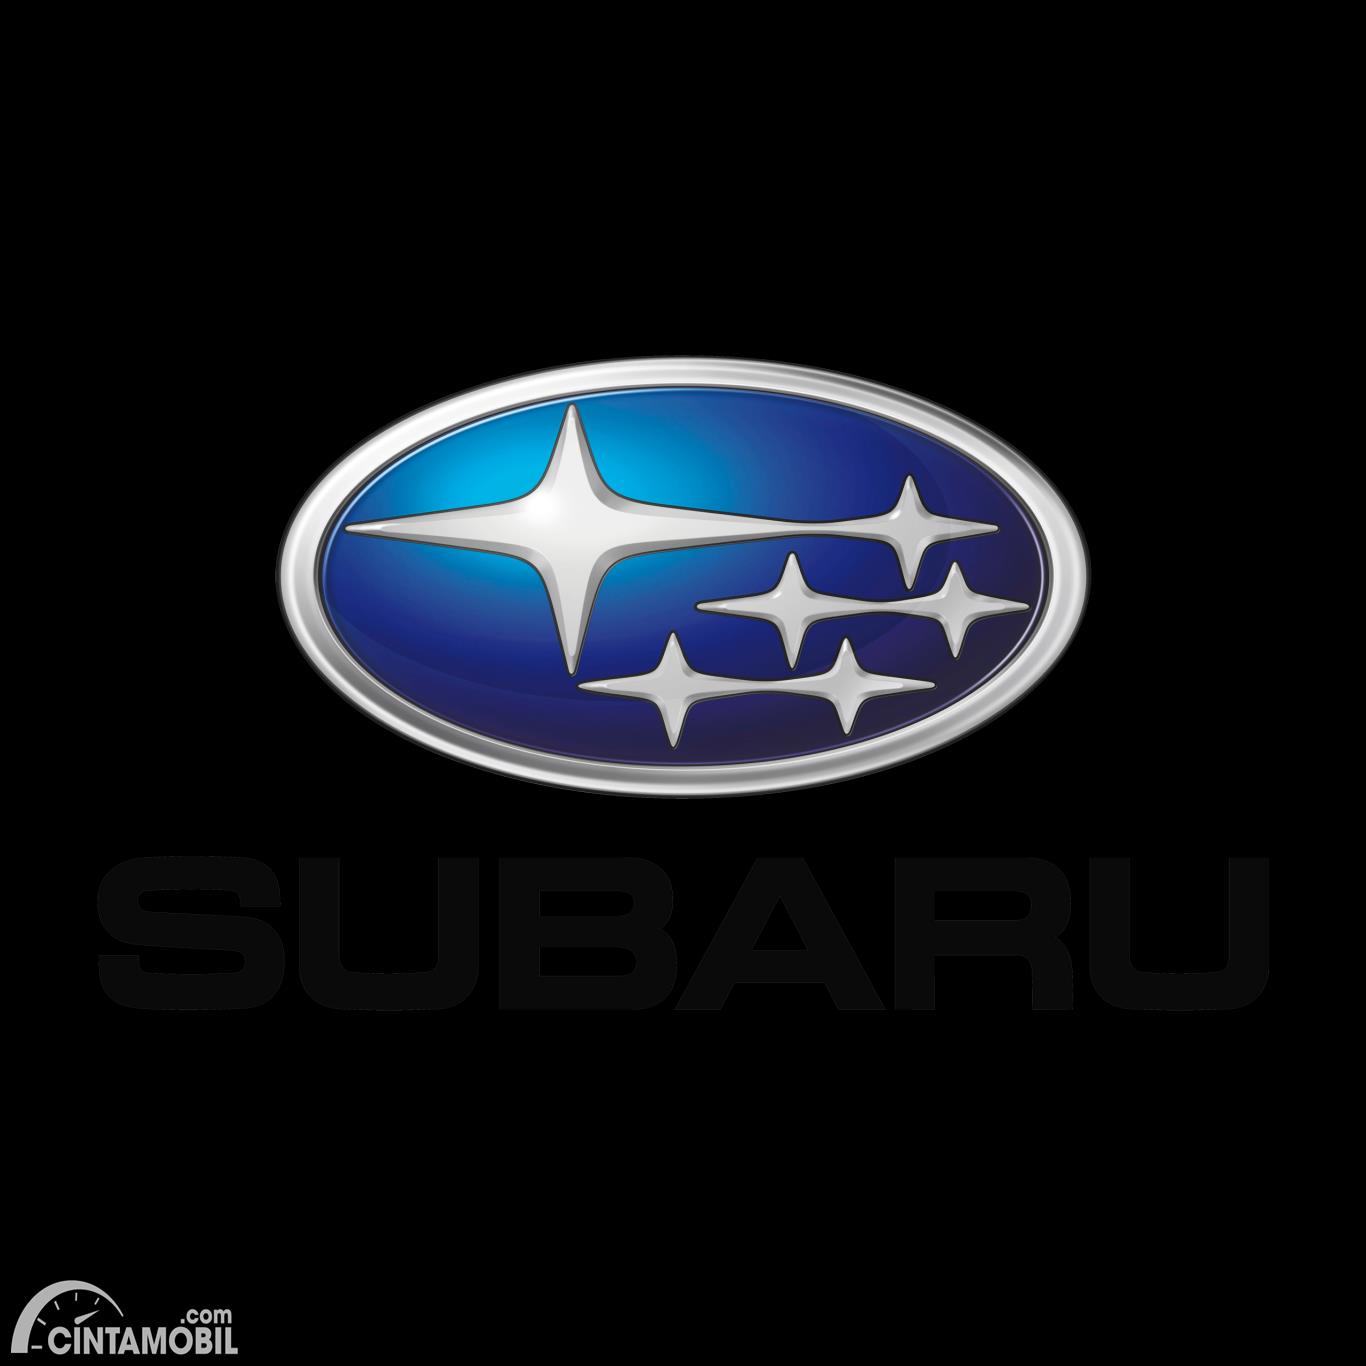 Gambar menunjukkan logo dari mobil Subaru